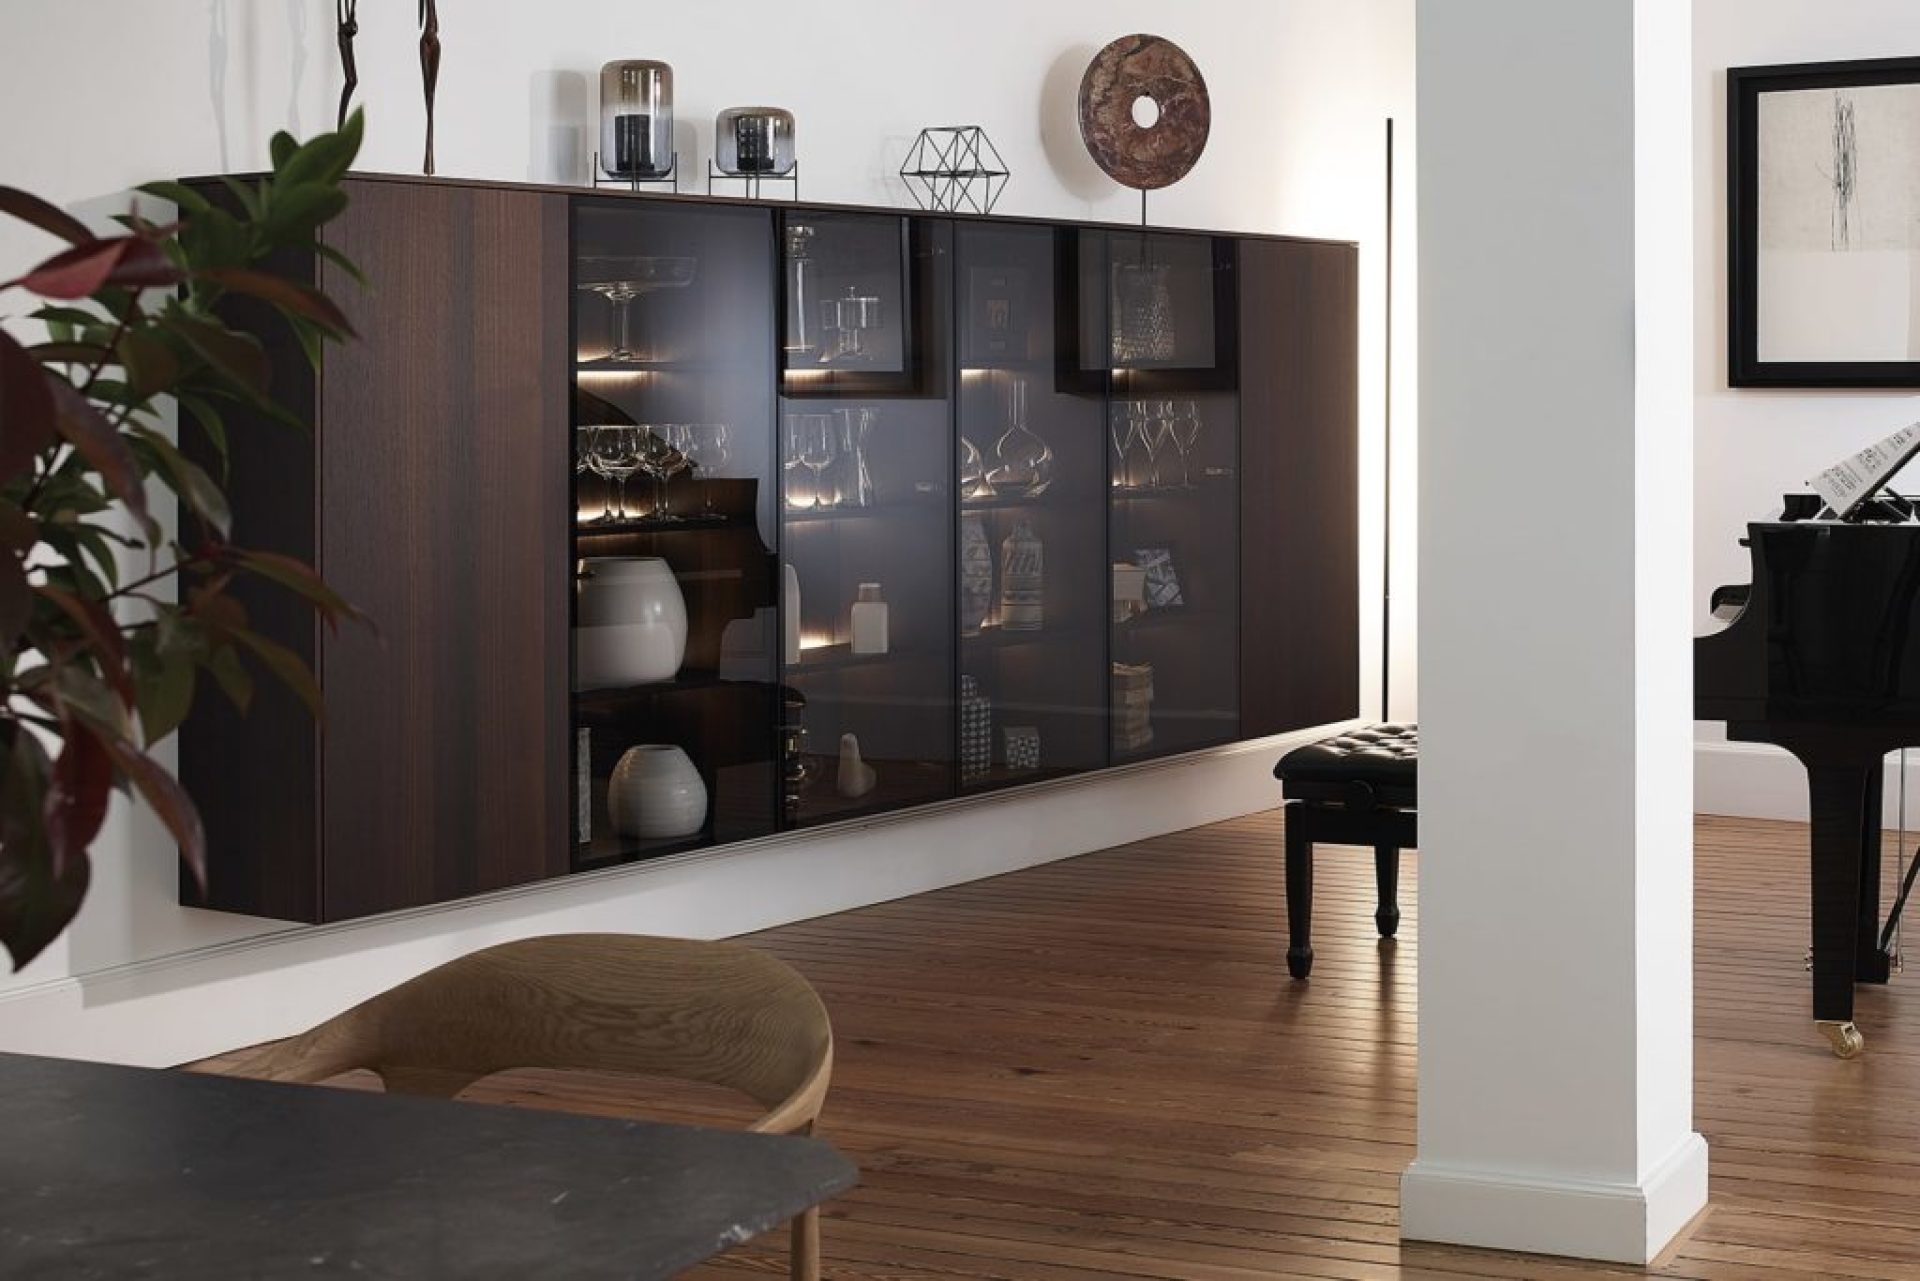 Compositions de meubles personnalisables haut de gamme: buffet suspendu en chêne fumé avec vitrines aluminium noir